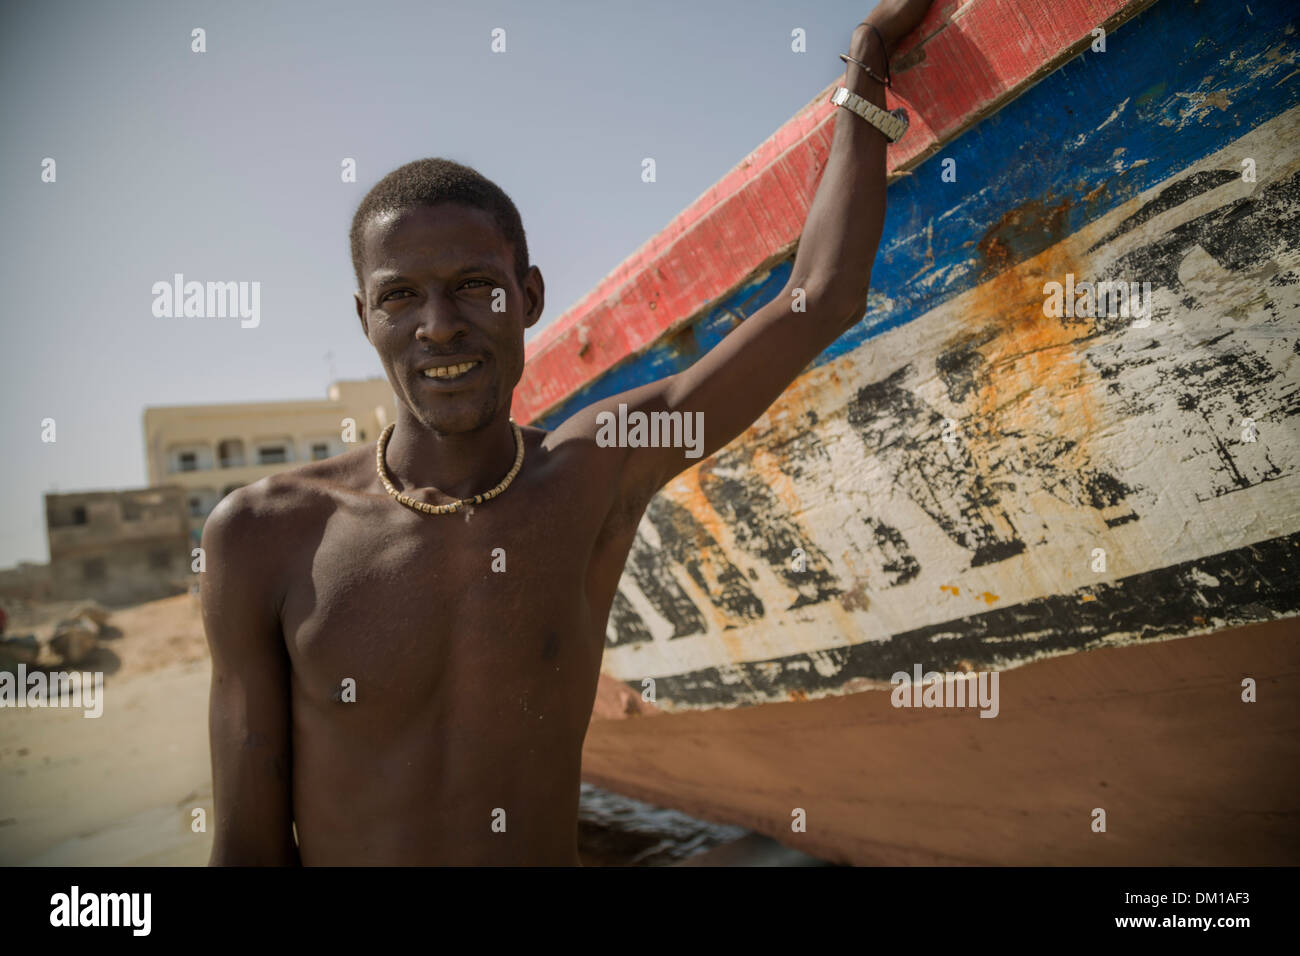 Pêcheur dans Yaf village de pêcheurs - Dakar, Sénégal. Banque D'Images